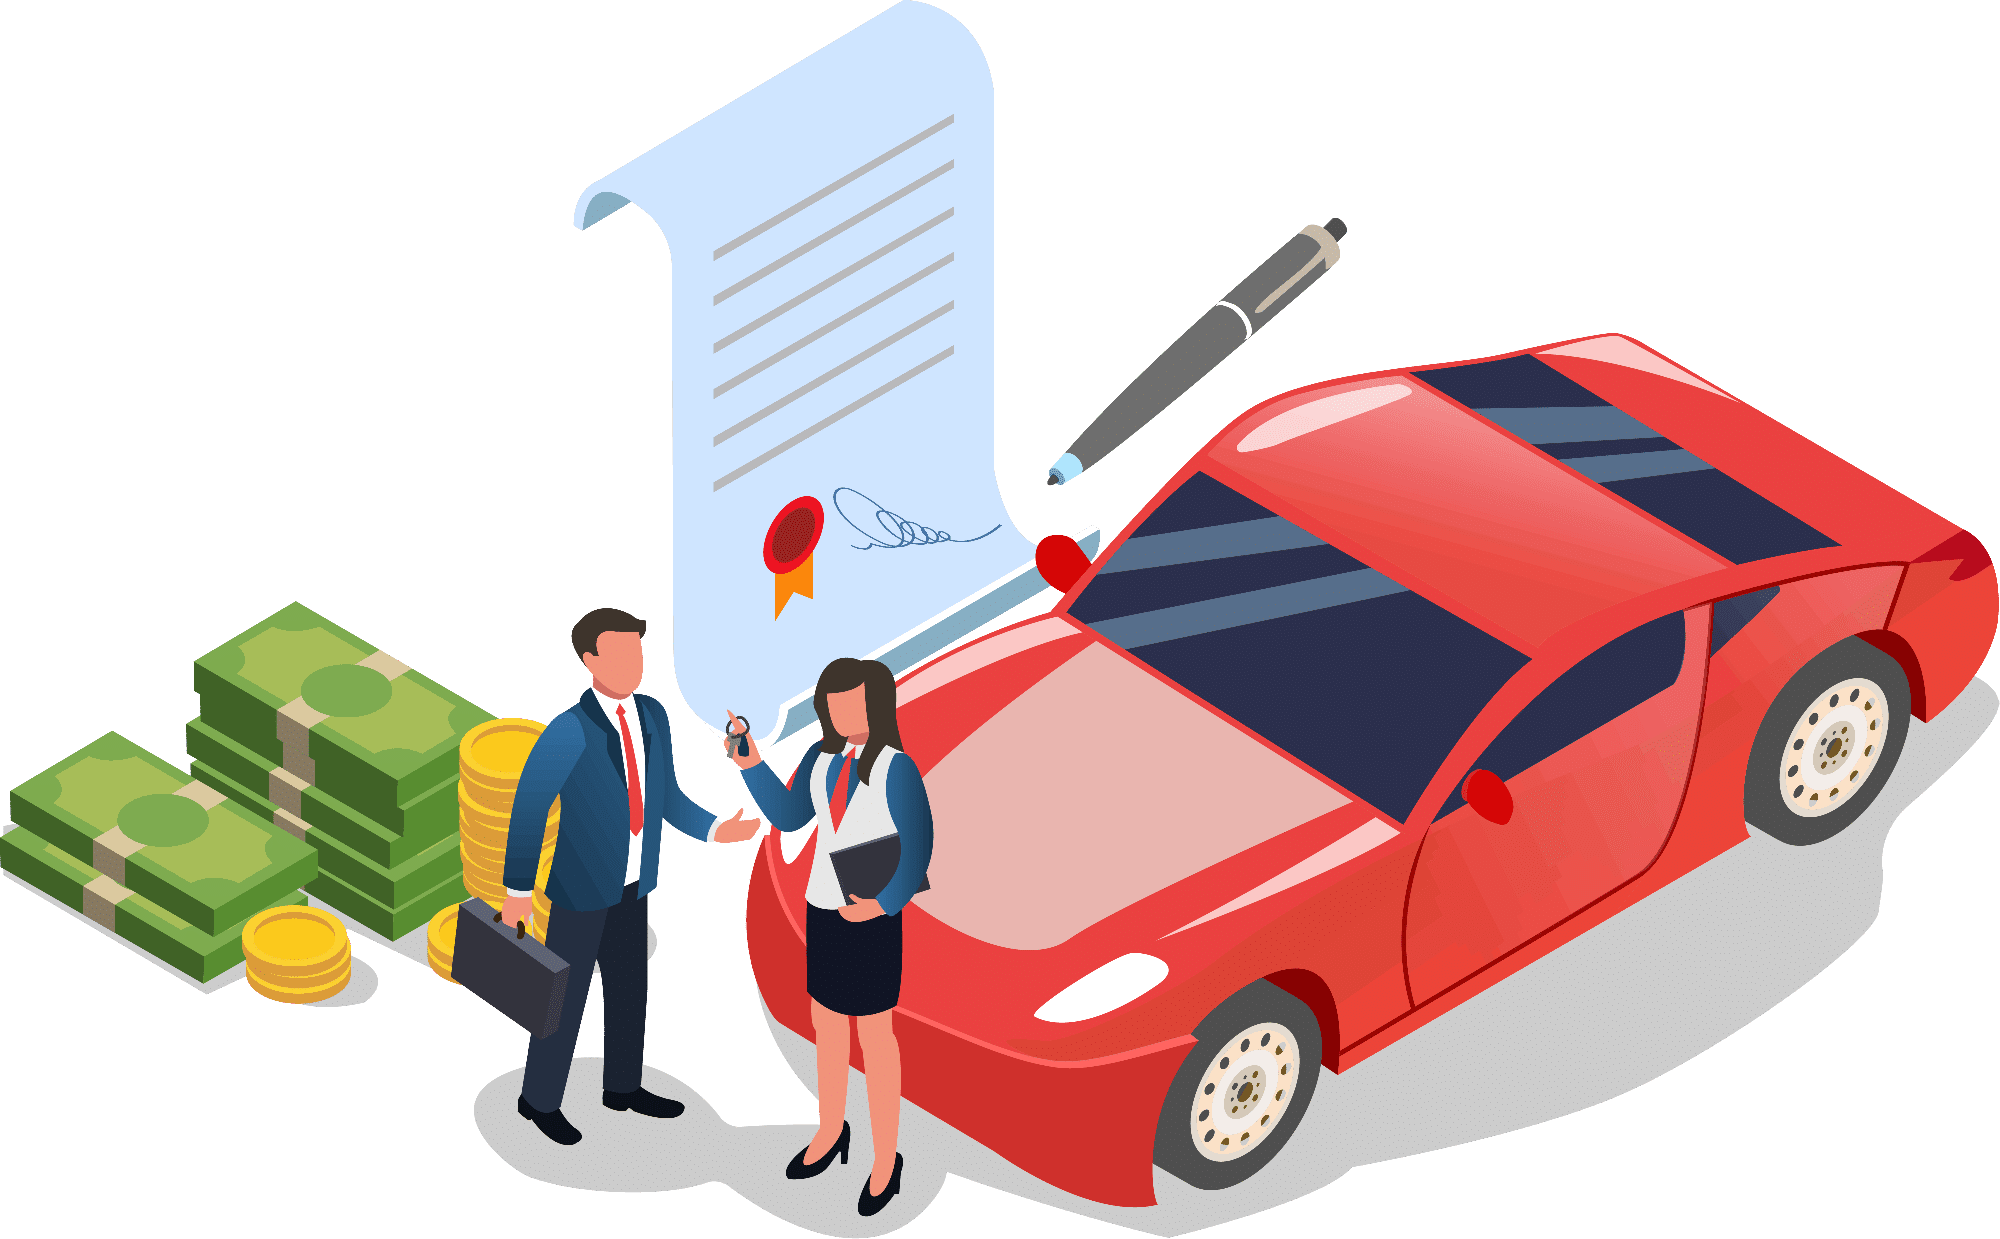 Car Title Loans in Canada